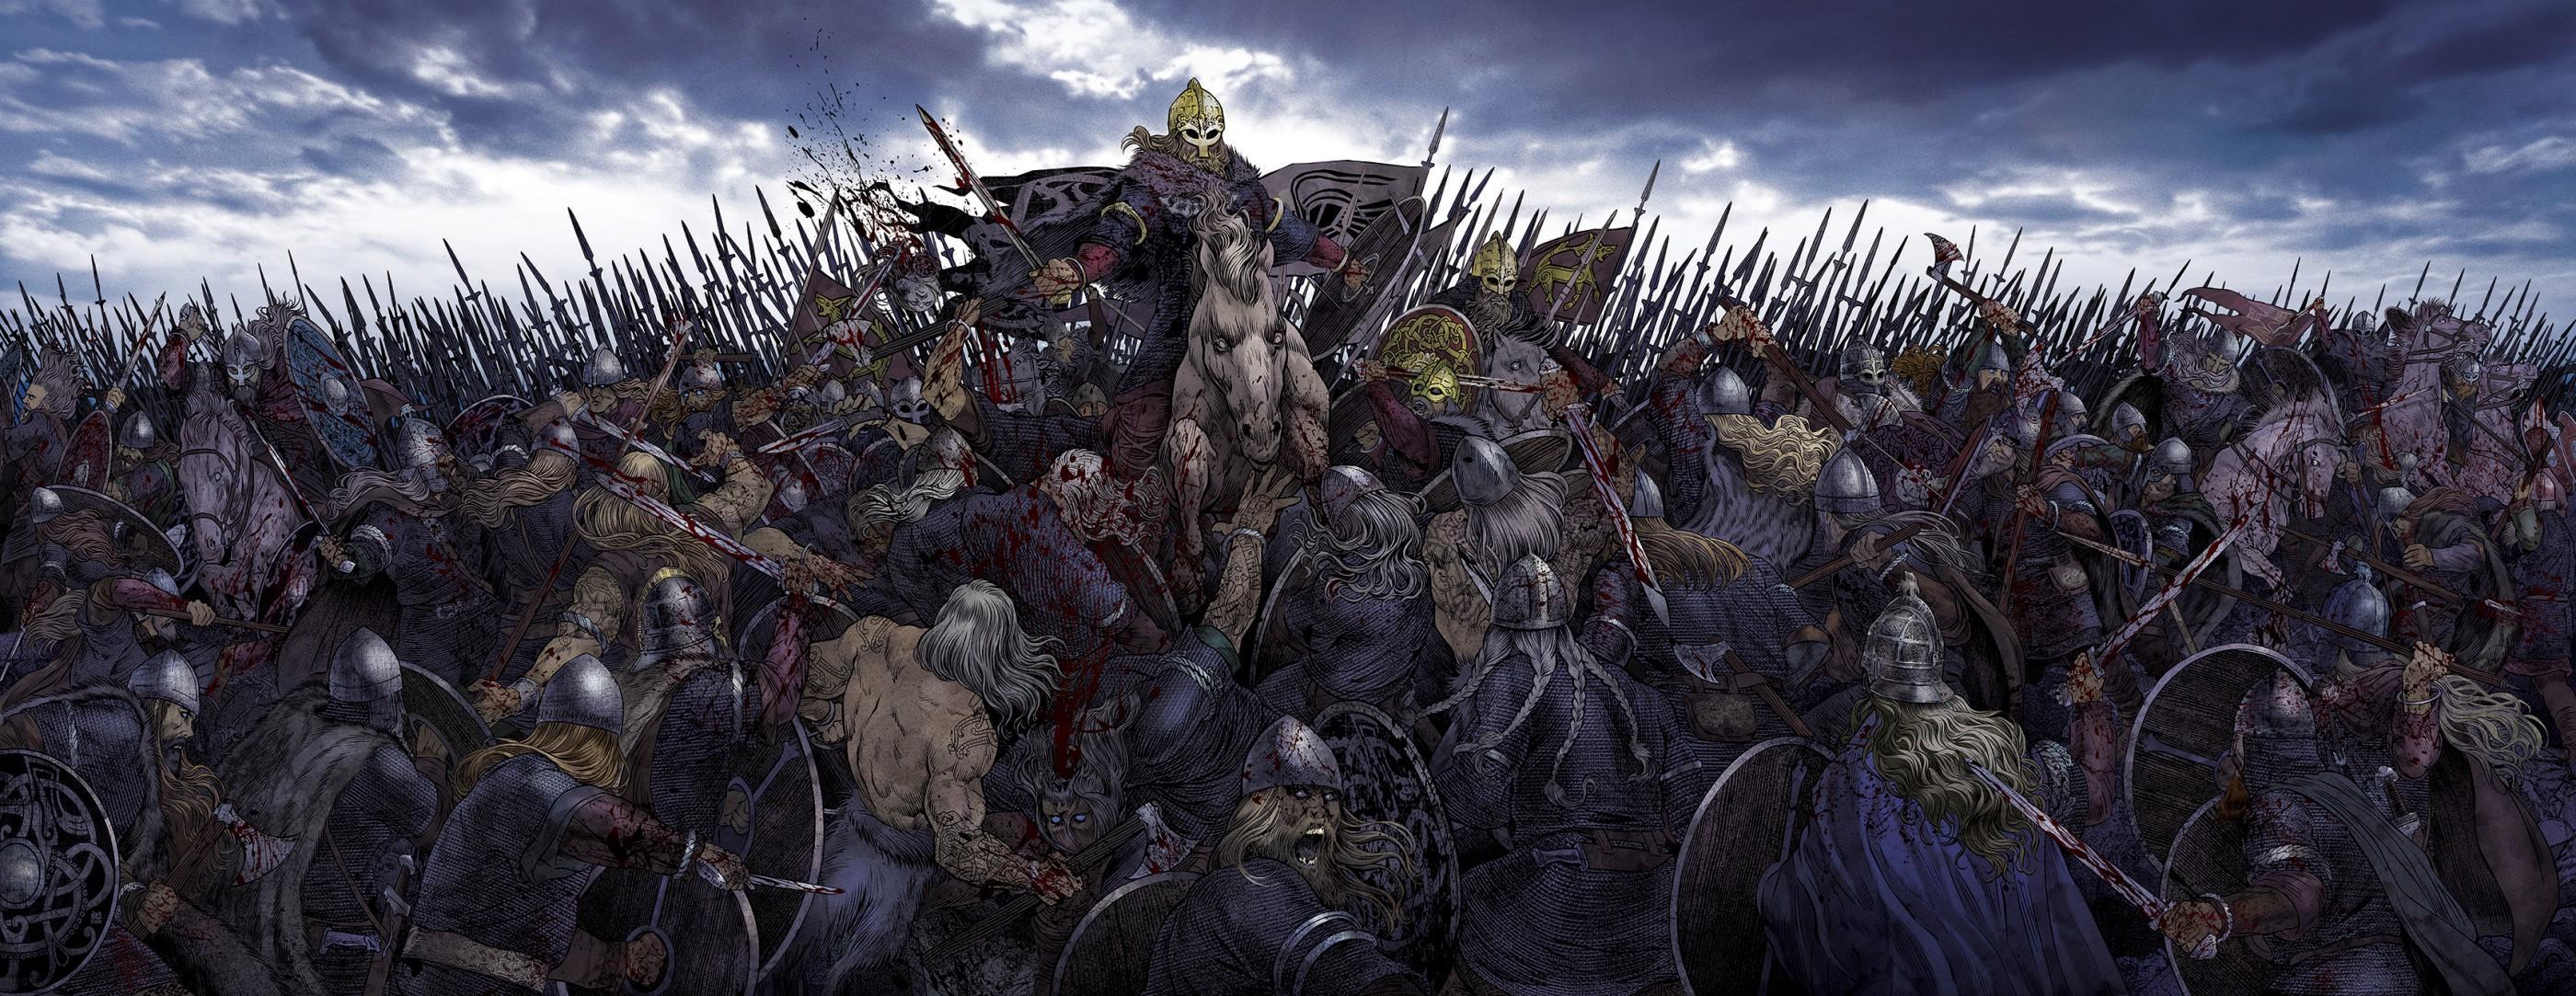 Карал врагов. Эйнхерии Скандинавия. Великая языческая армия викингов. Скандинавия Викинги битвы. Эйнхерии (Einherjar).